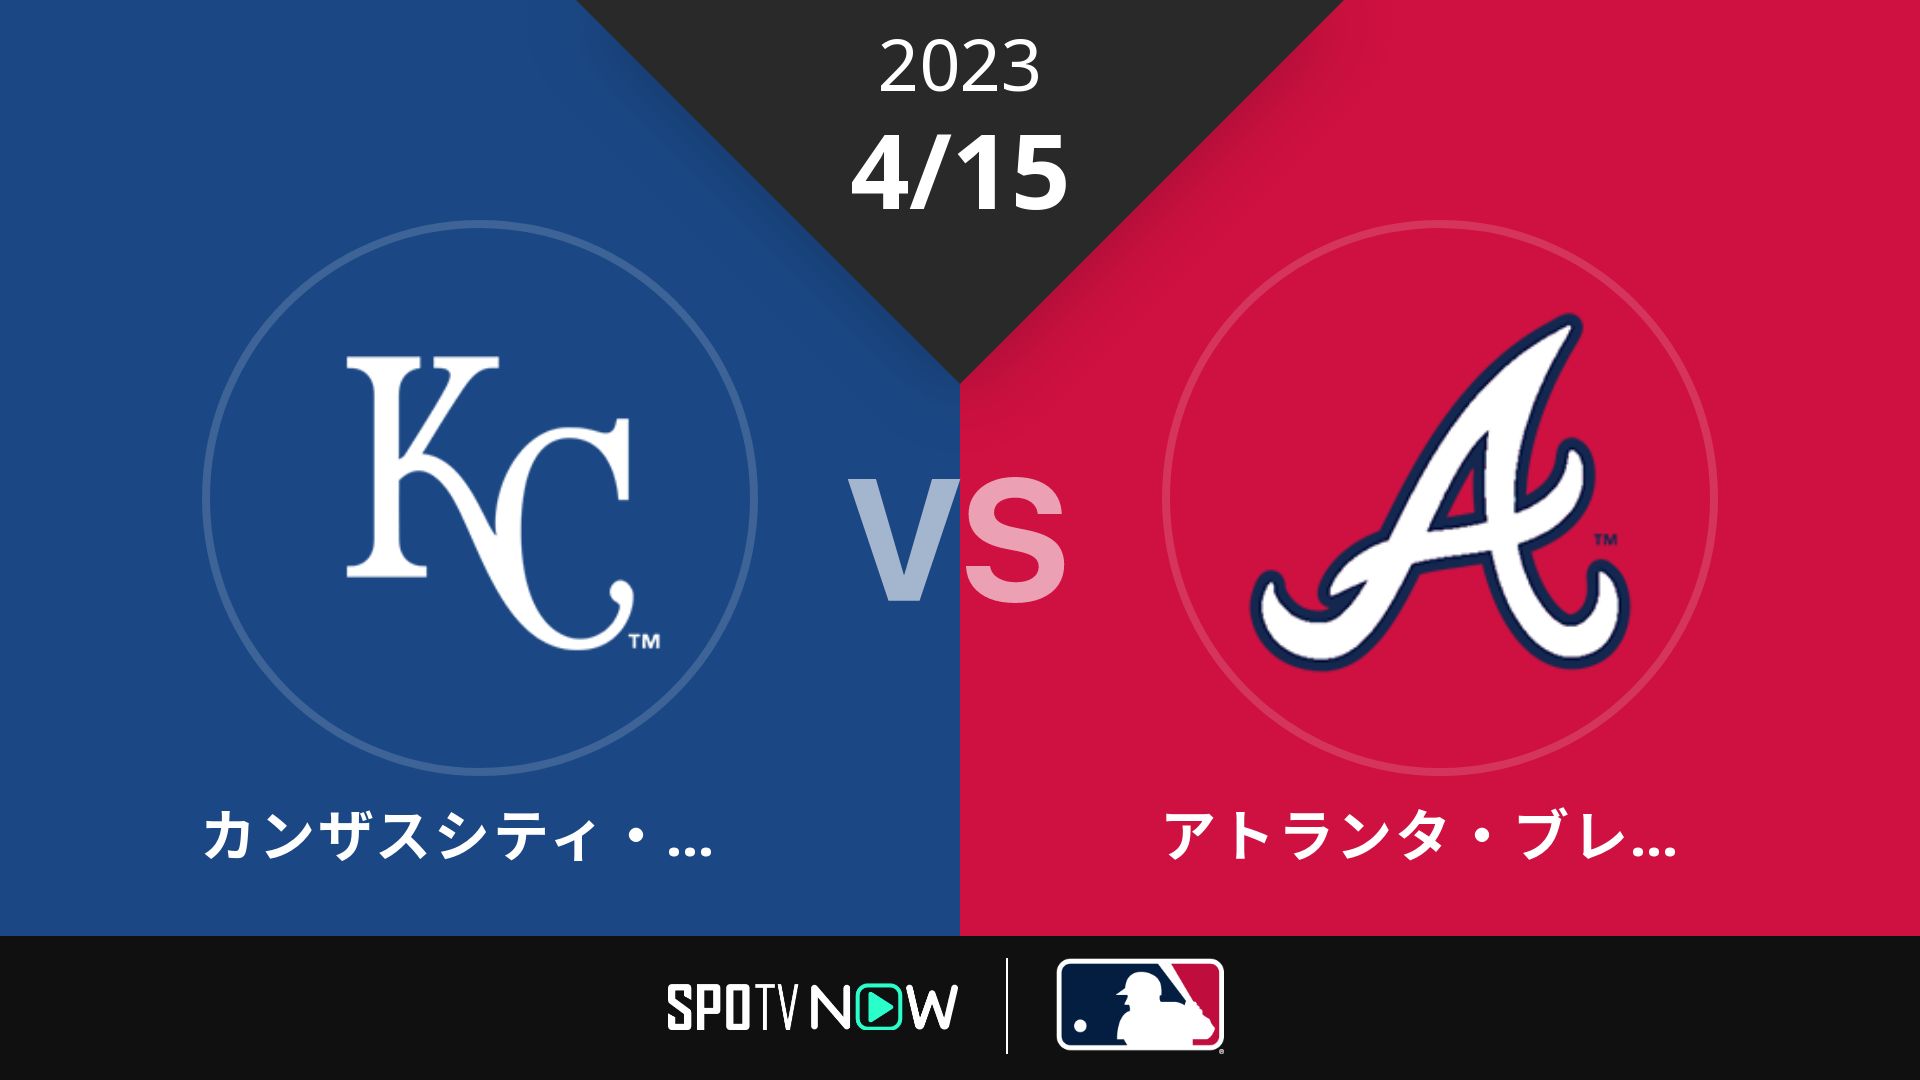 2023/4/15 ロイヤルズ vs ブレーブス [MLB]